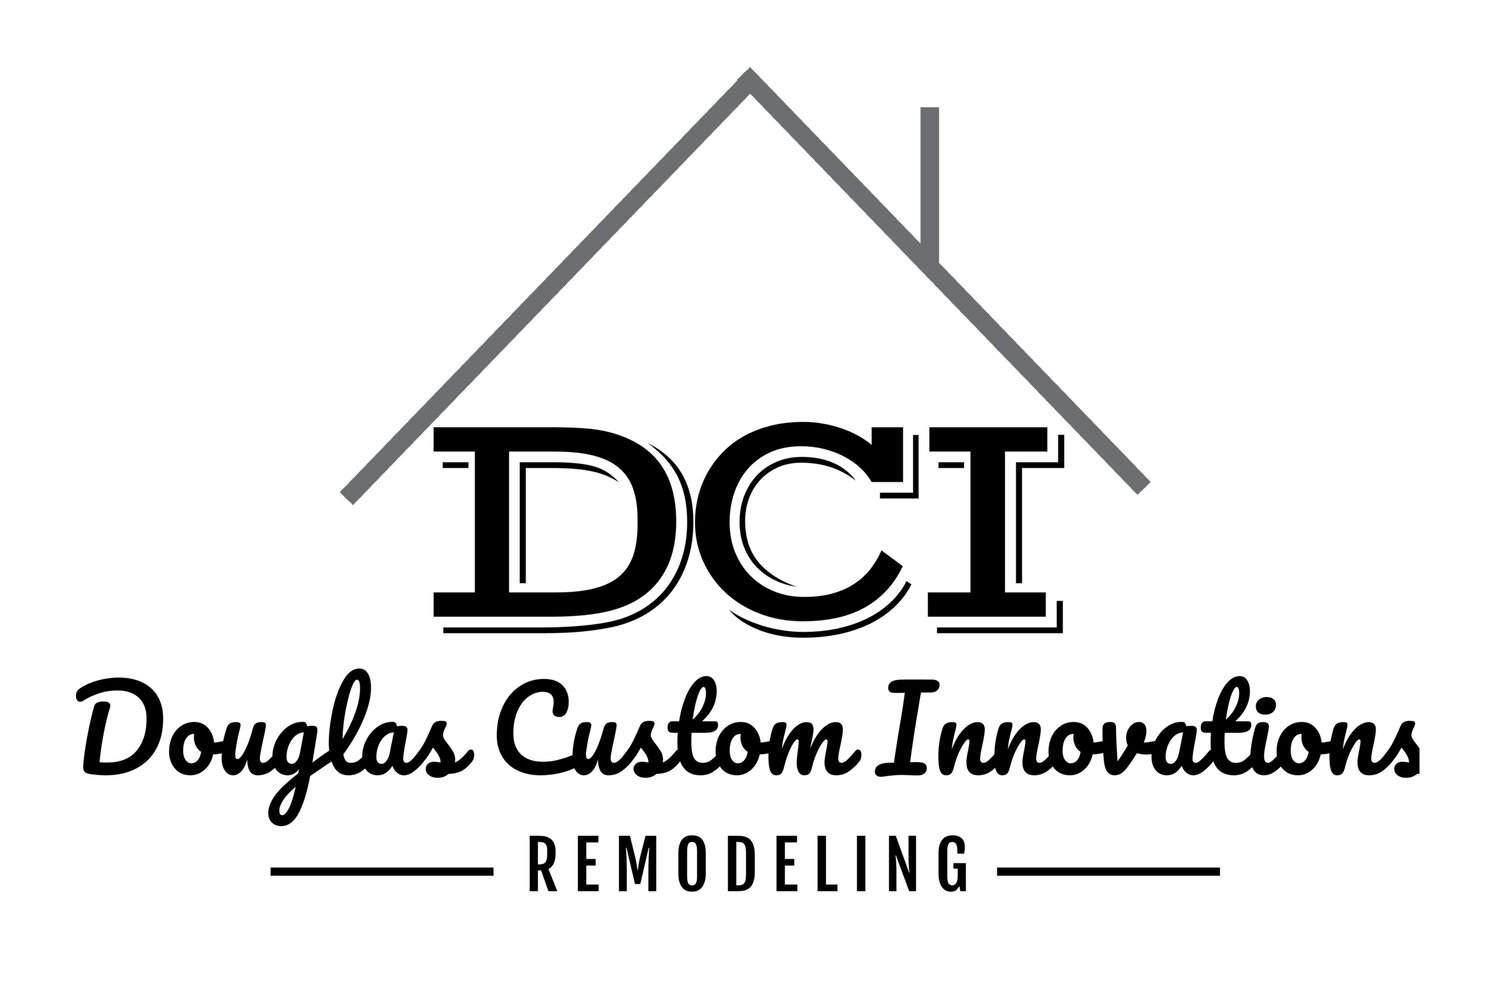 Douglas Custom Innovations LLC